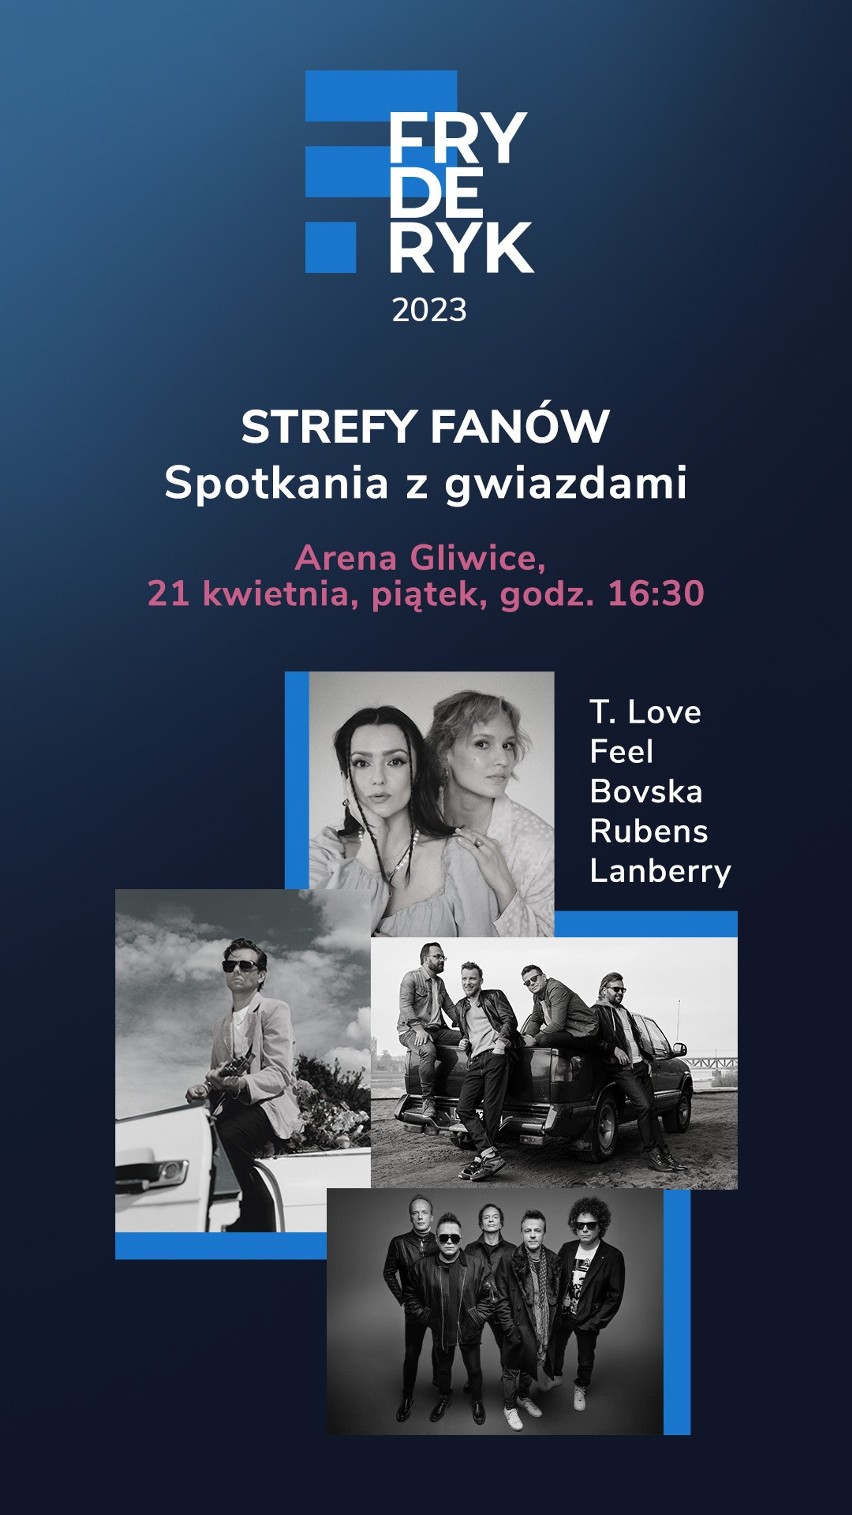 Strefa fanów na Fryderyk Festiwal 2023 w Gliwicach